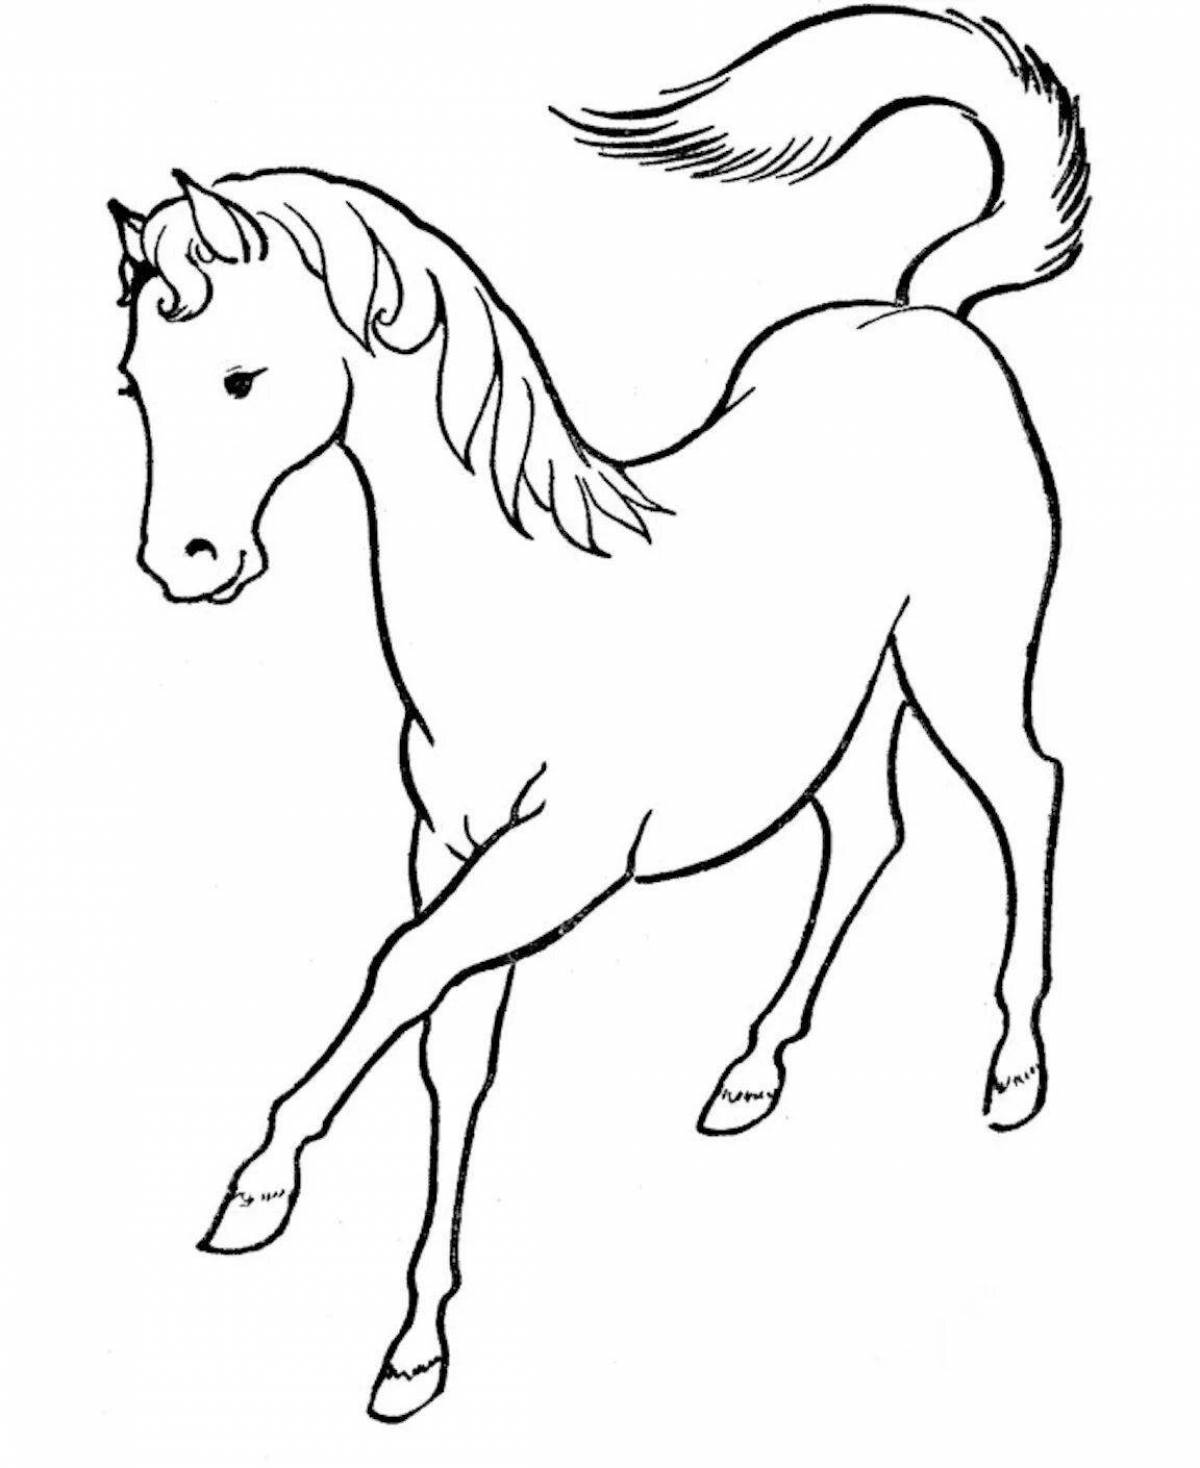 Величественная раскраска рисунок лошади